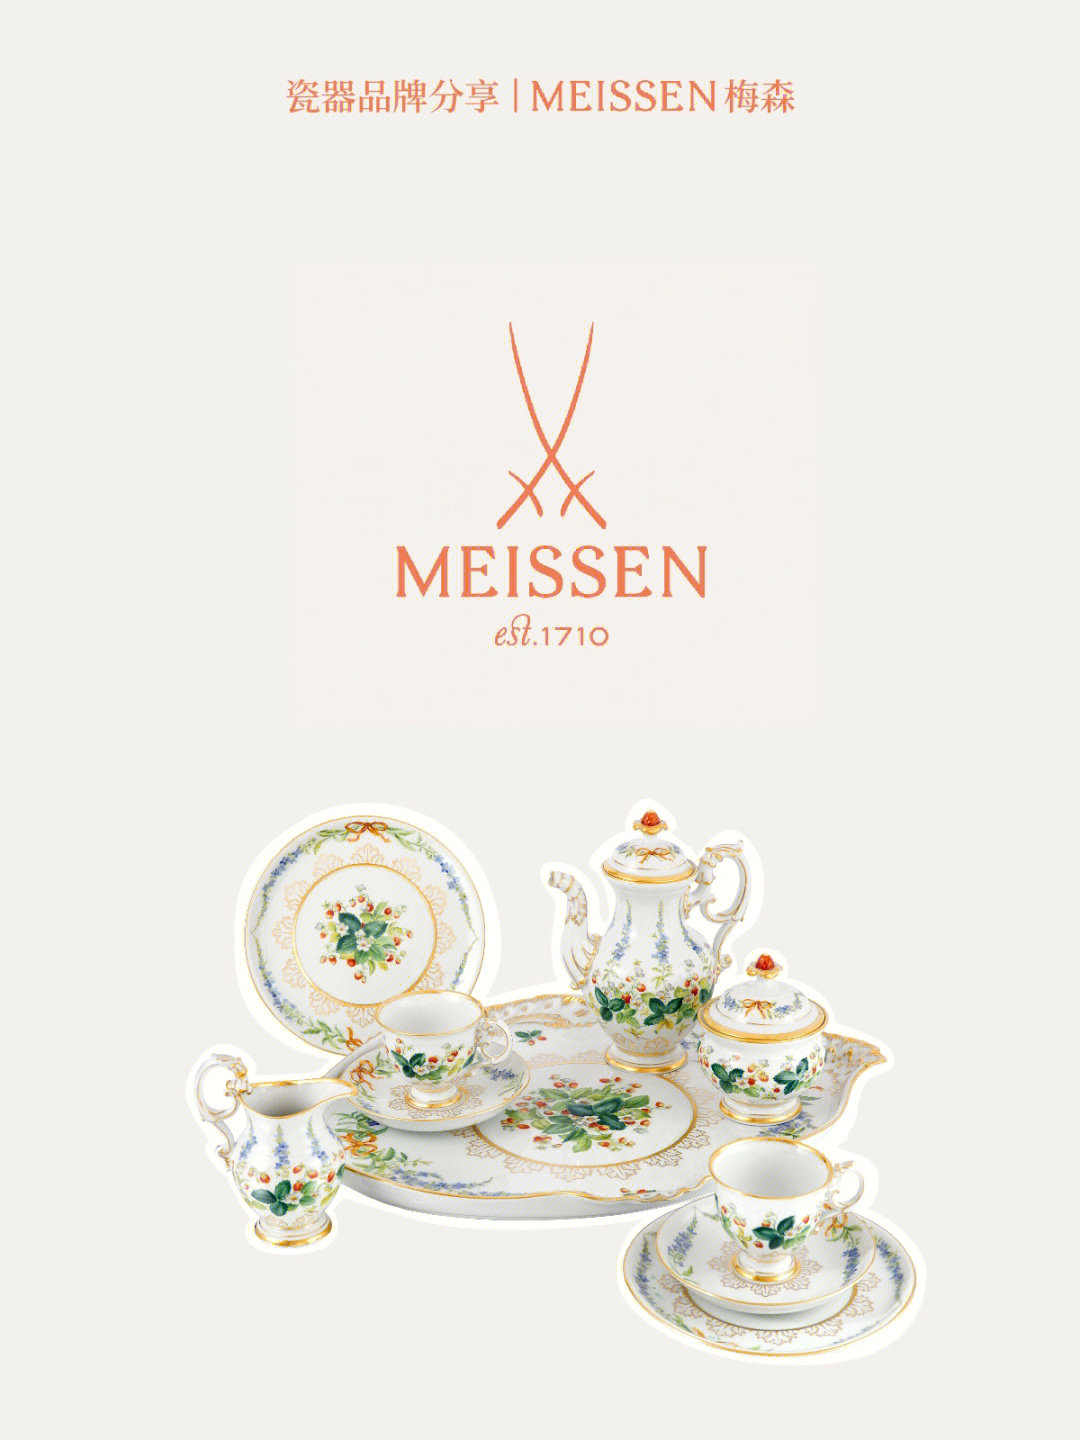 瓷器品牌分享meissen梅森